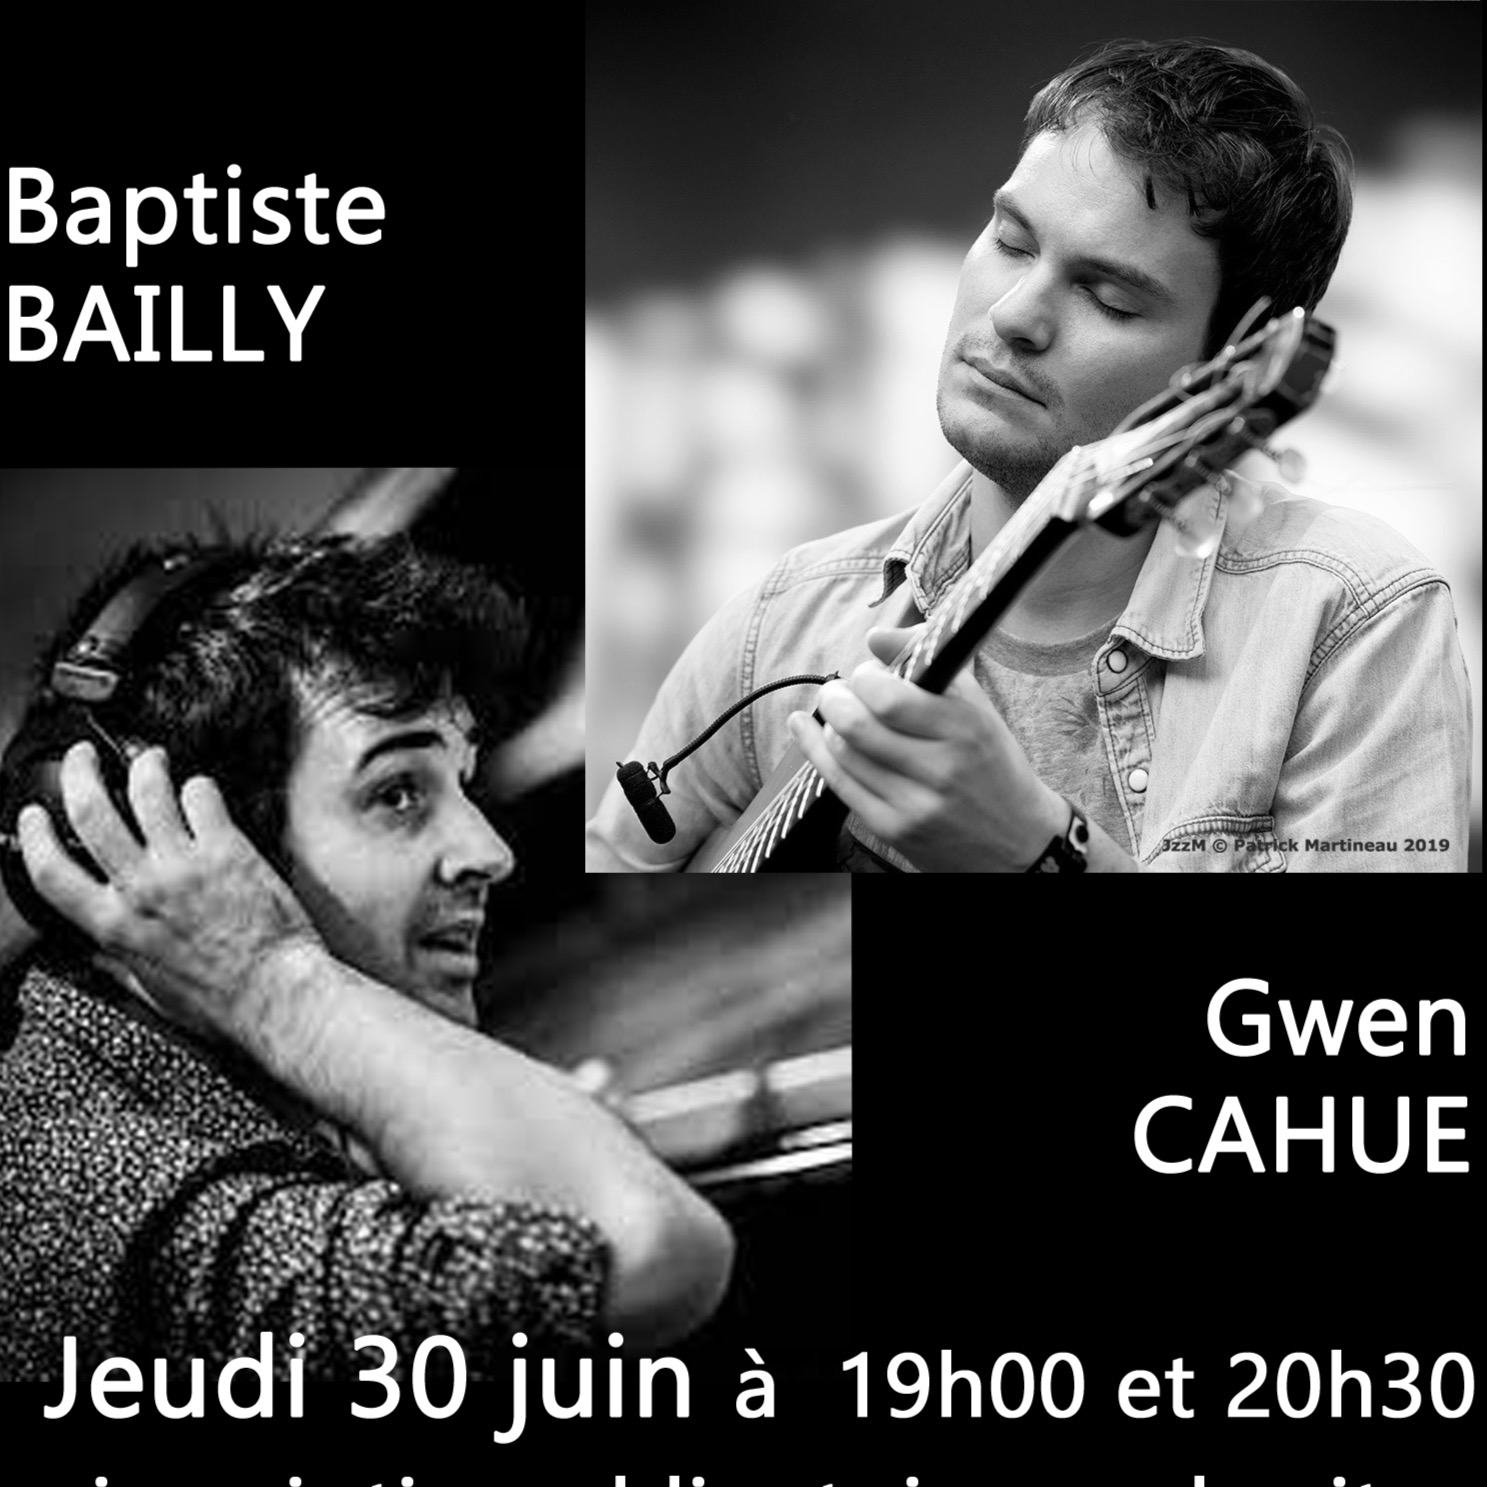 KONZERT APREM JAZZ - Baptiste Bailly, piano et Gwen Cahue, guitare. Concert du ++ 30.06.2022 + au Cleuyou